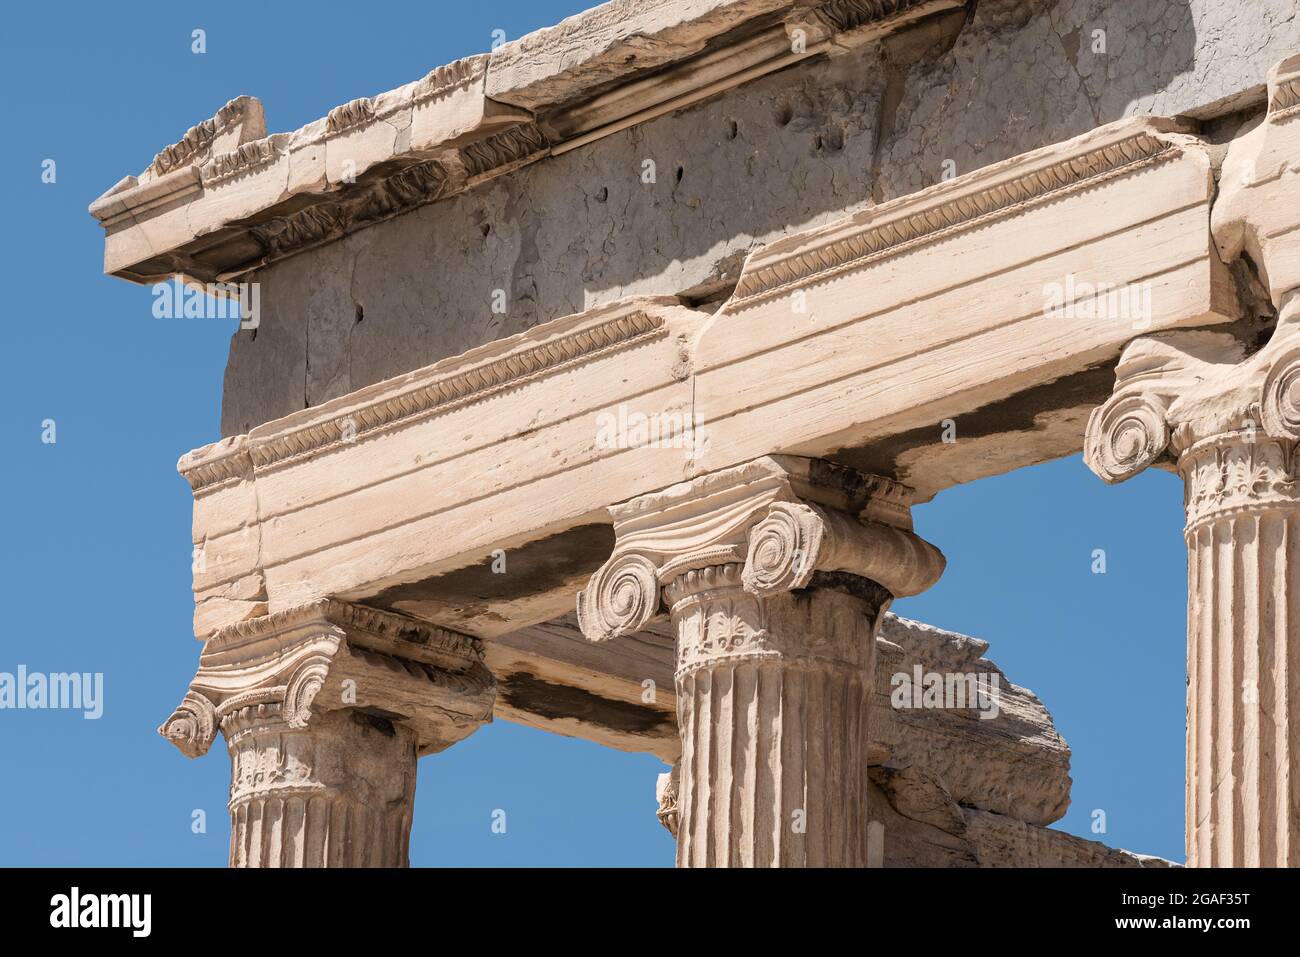 Particolare di architettura greca classica, colonne ioniche e cornicione, Acropoli, Atene Foto Stock